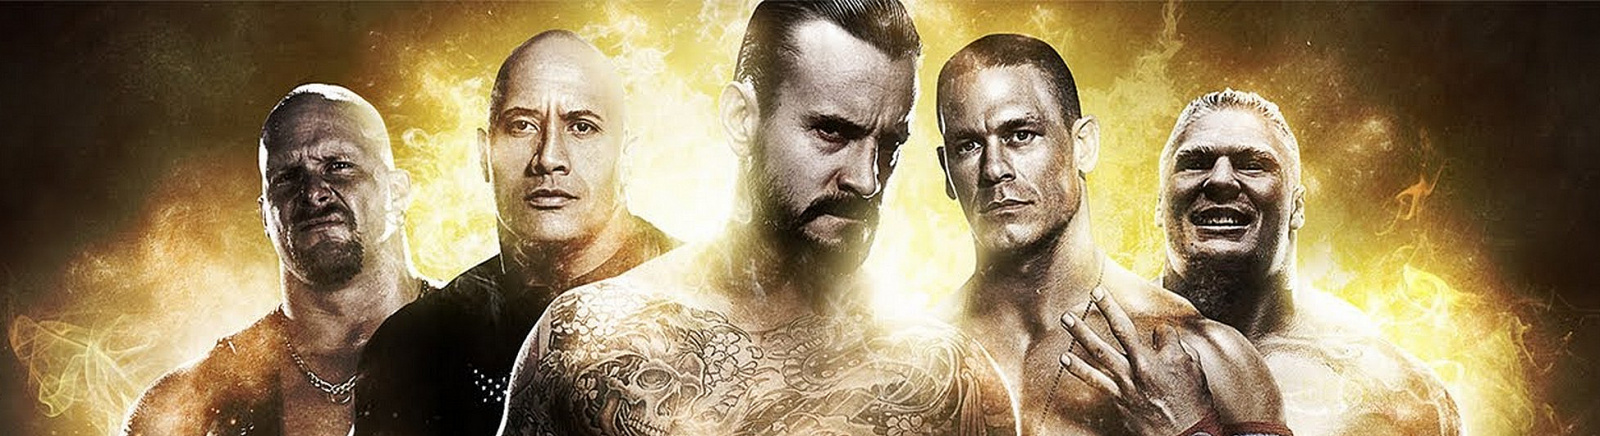 Дата выхода WWE 12  на PS3, Xbox 360 и Wii в России и во всем мире